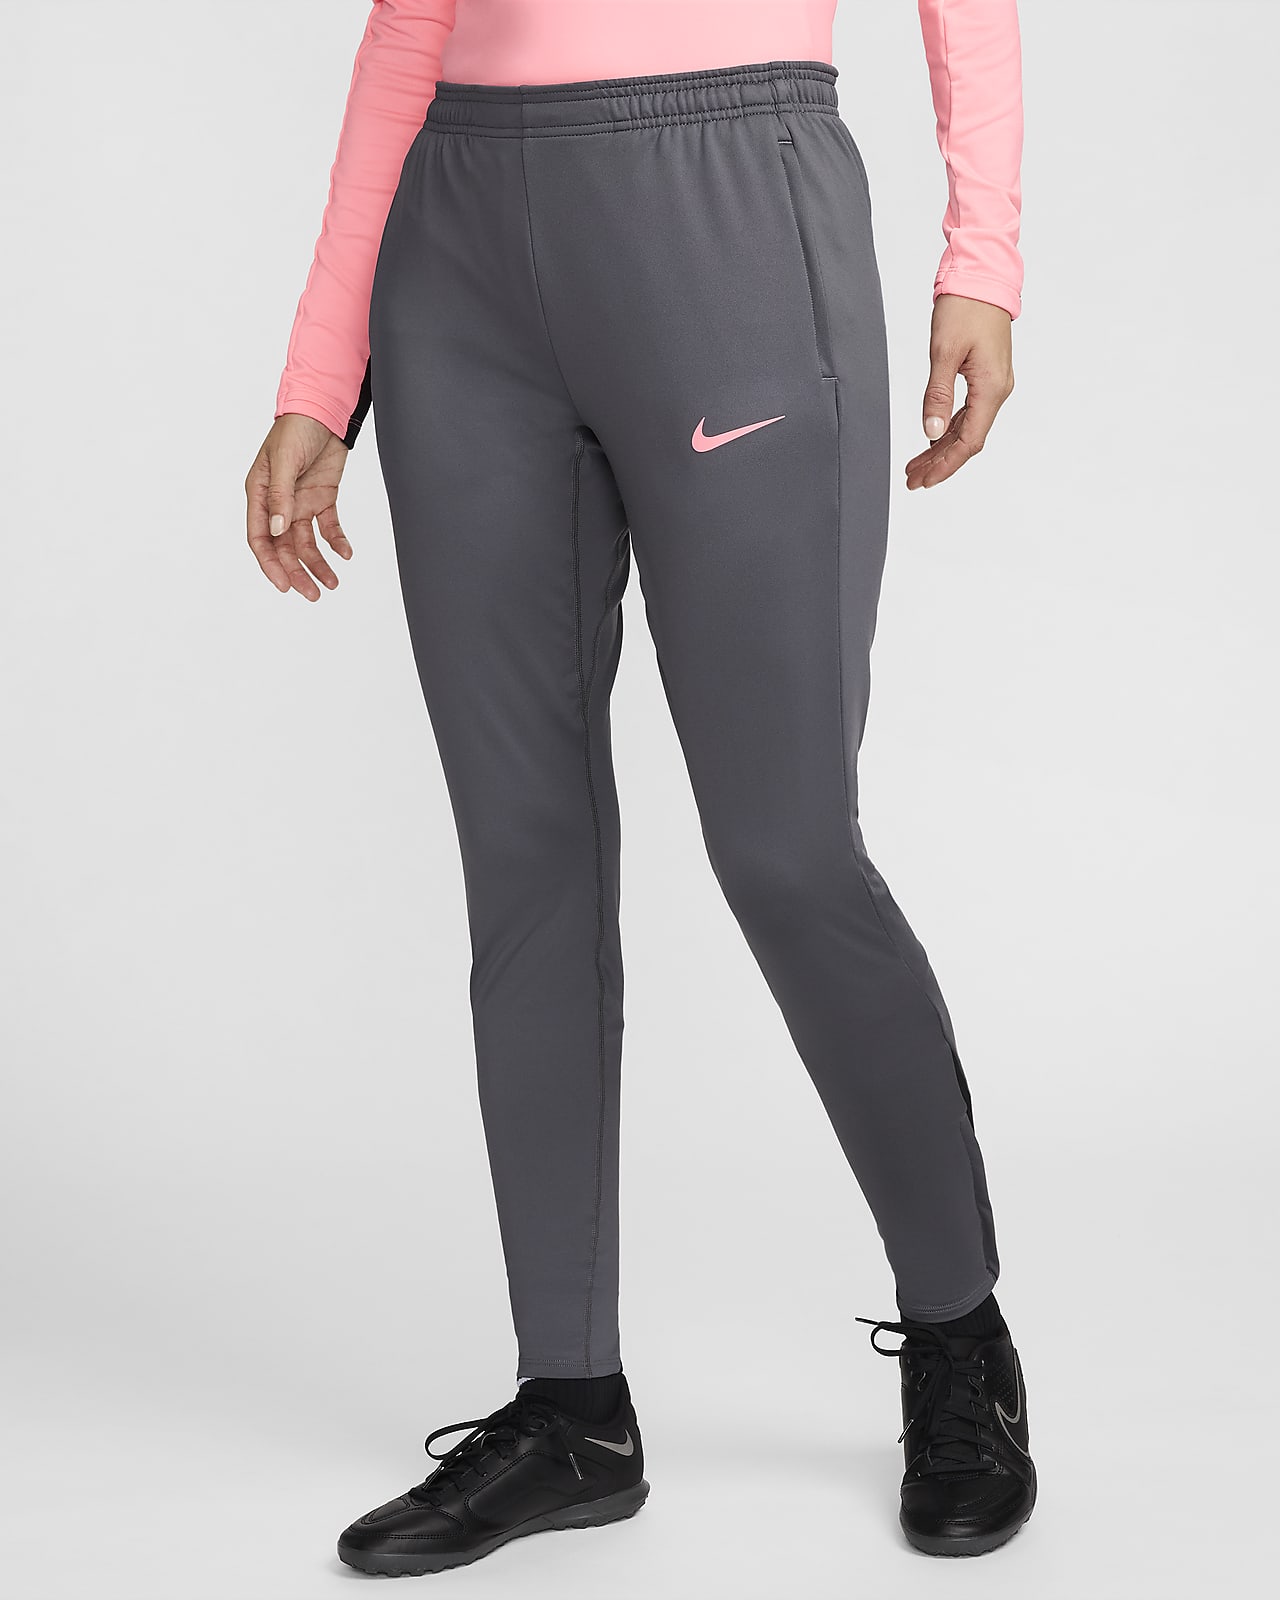 Dámské fotbalové kalhoty Dri-FIT Nike Strike